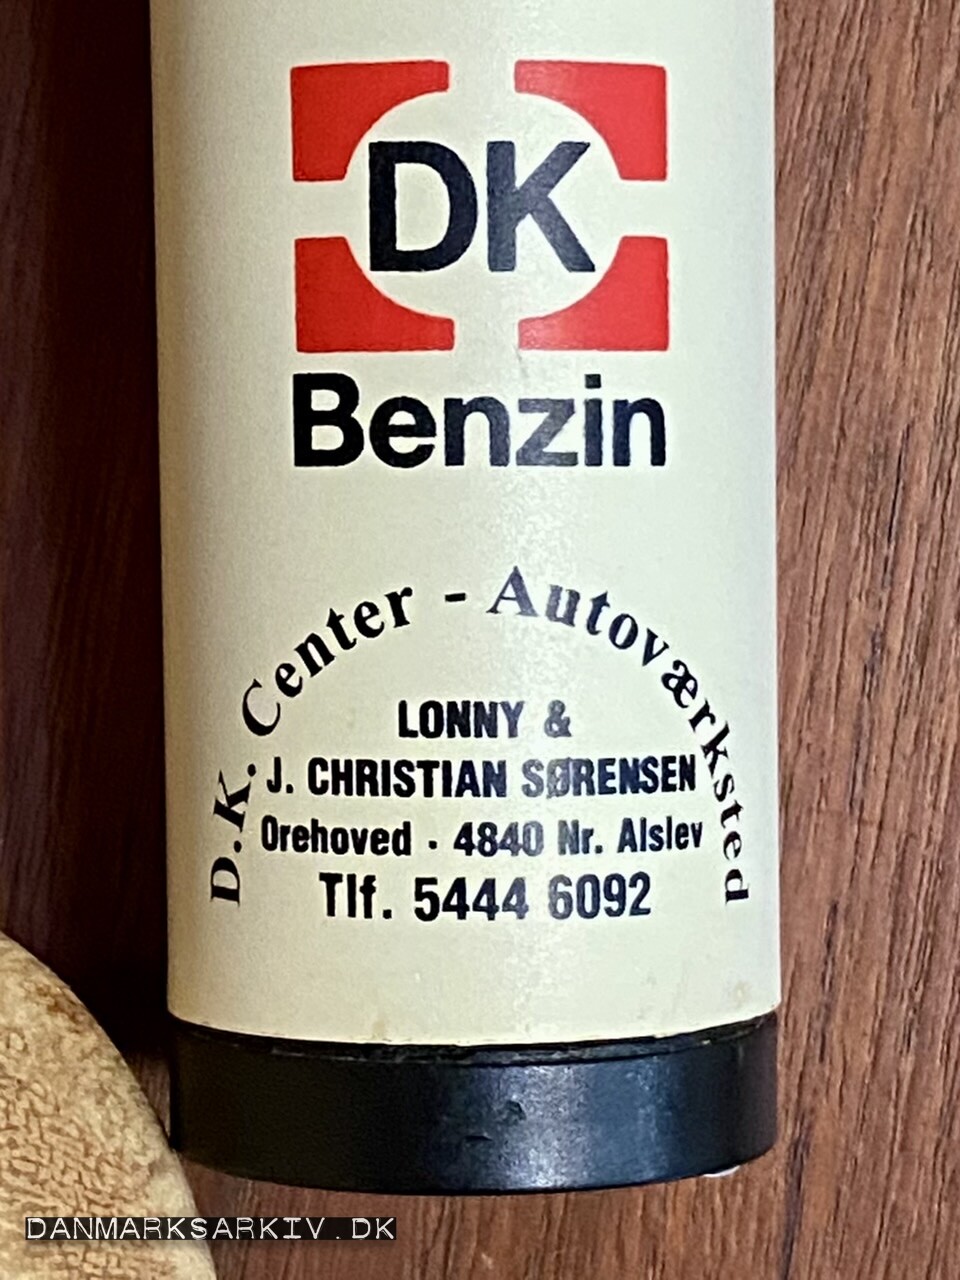 DK Benzin - D.K. Center Autoværksted - Lonny & J. Christian Sørensen - Nr. Alslev